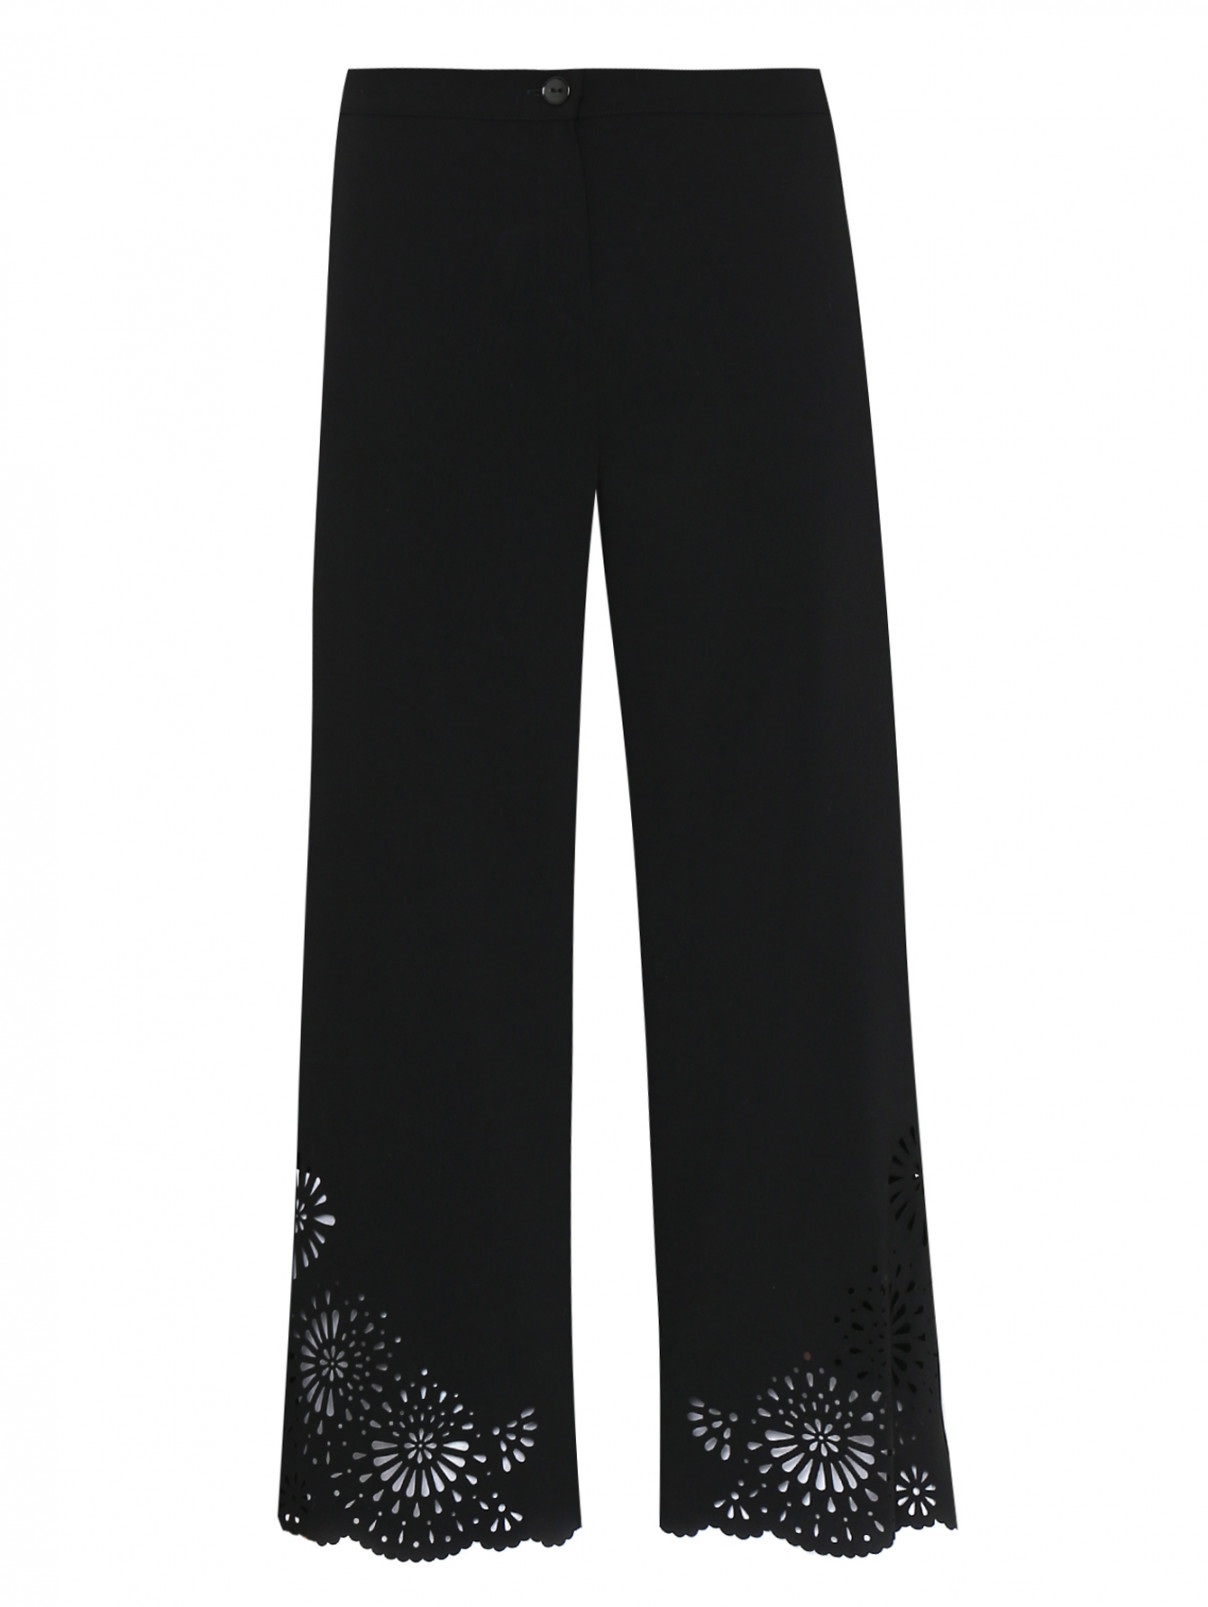 Укороченные брюки с перфорацией Persona by Marina Rinaldi  –  Общий вид  – Цвет:  Черный